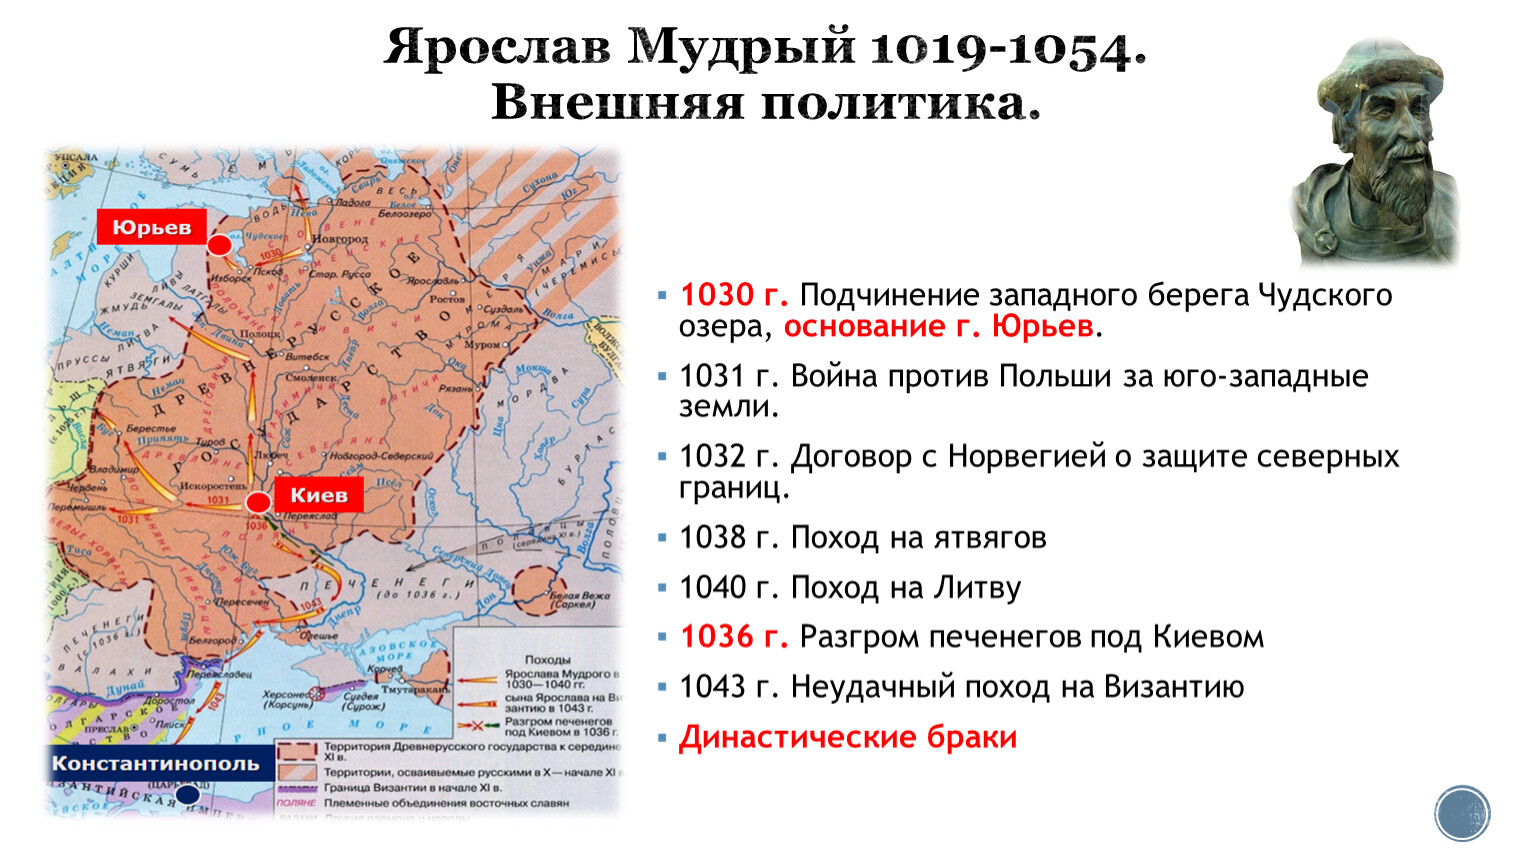 Внутренняя политика киевского князя в 1019 1054. Внутренняя политика что 1019-1054 по картам где происходило. Страна городов Киев 1019 1054 сообщение.